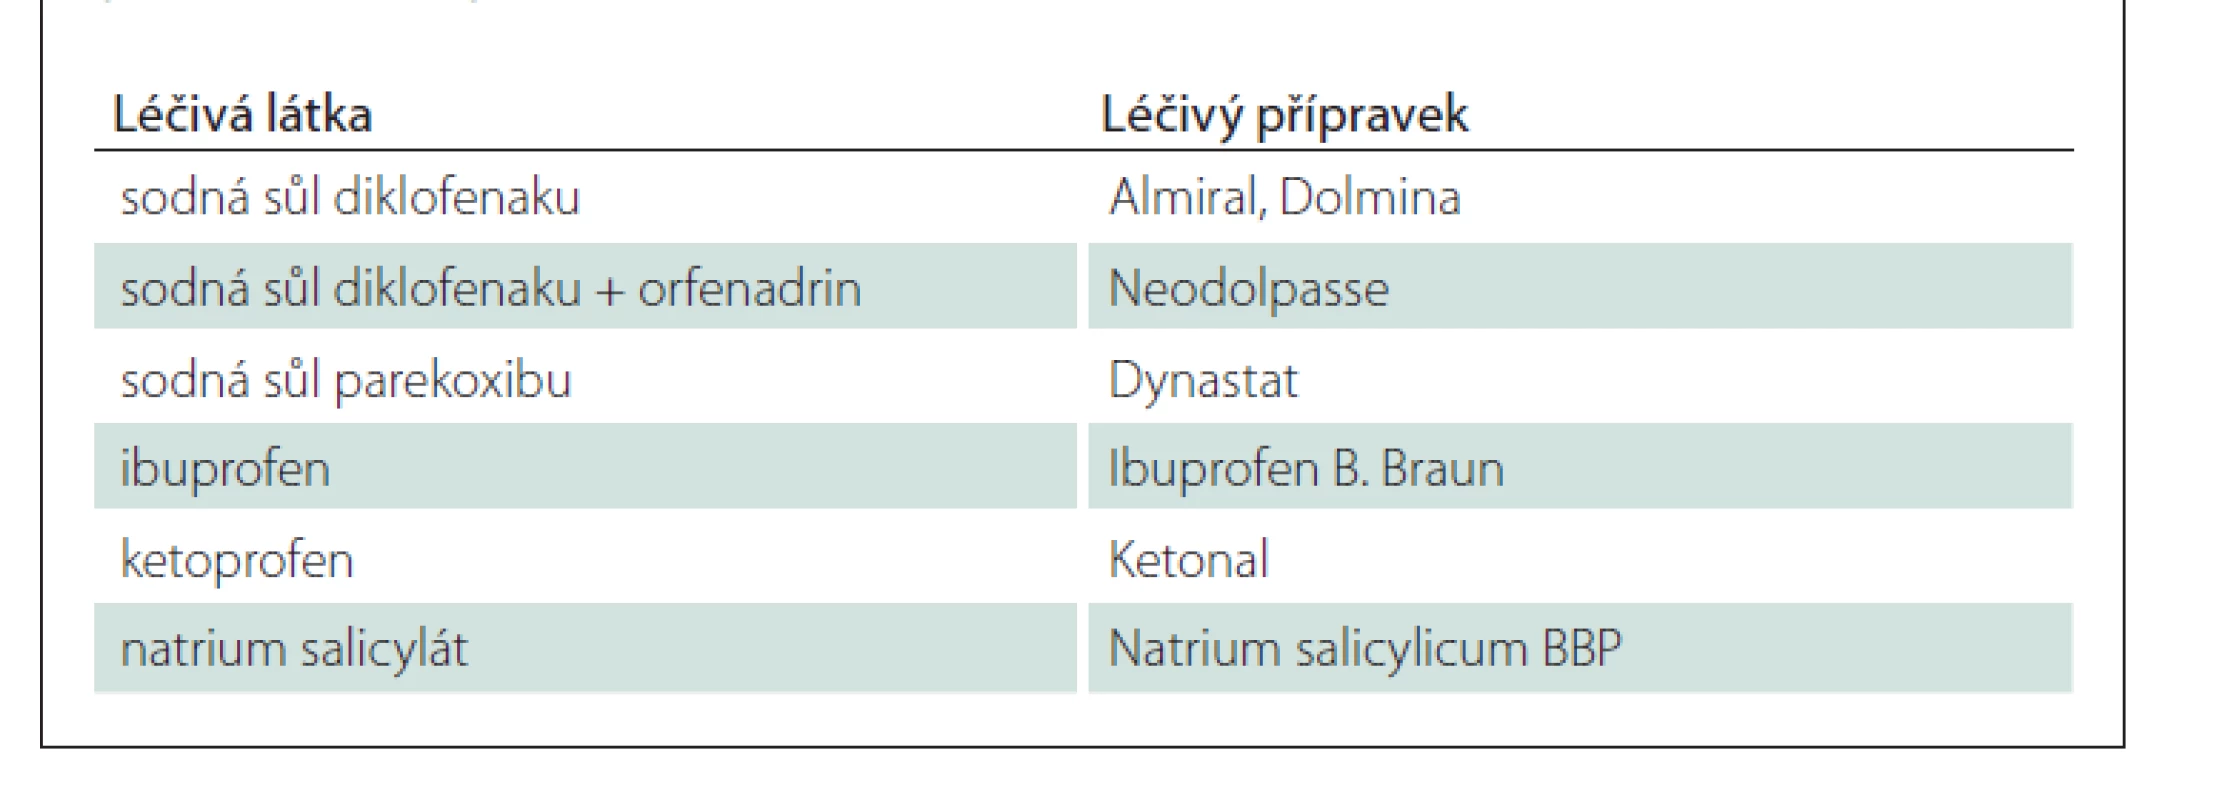 Nesteroidní antiflogistika dostupná v parenterální lékové formě v ČR
(stav k 8. 3. 2021) [8].